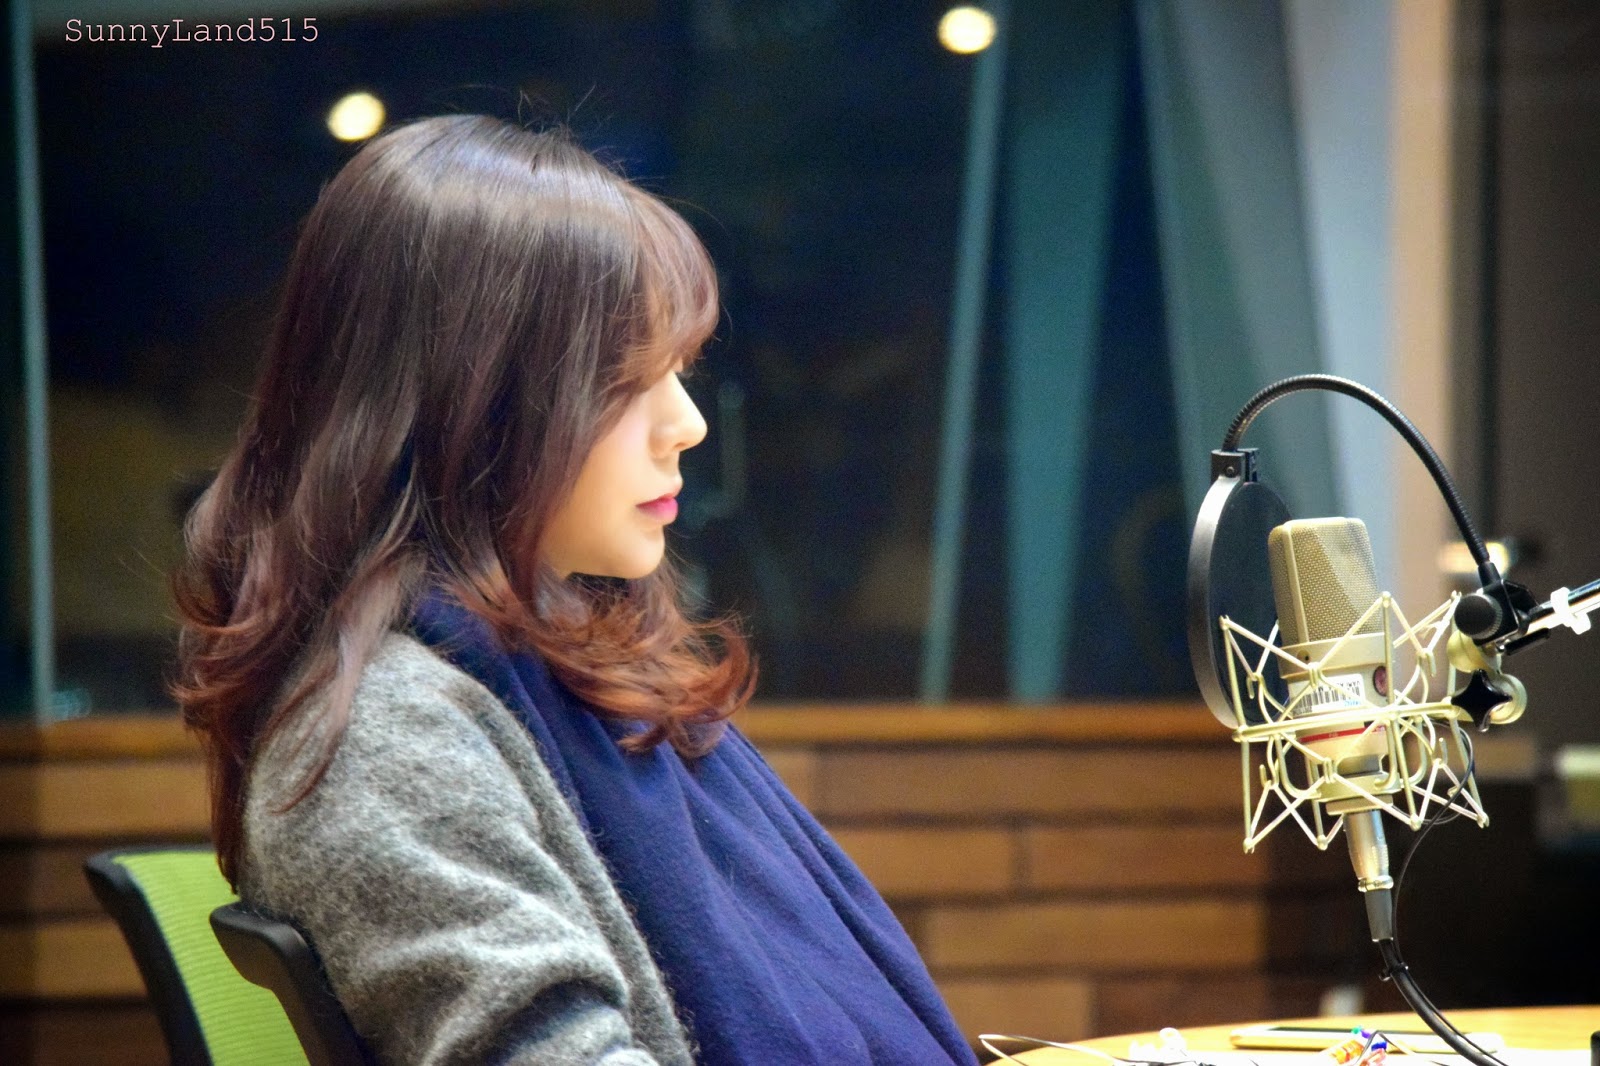 [OTHER][06-02-2015]Hình ảnh mới nhất từ DJ Sunny tại Radio MBC FM4U - "FM Date" - Page 10 DSC_0189_Fotor